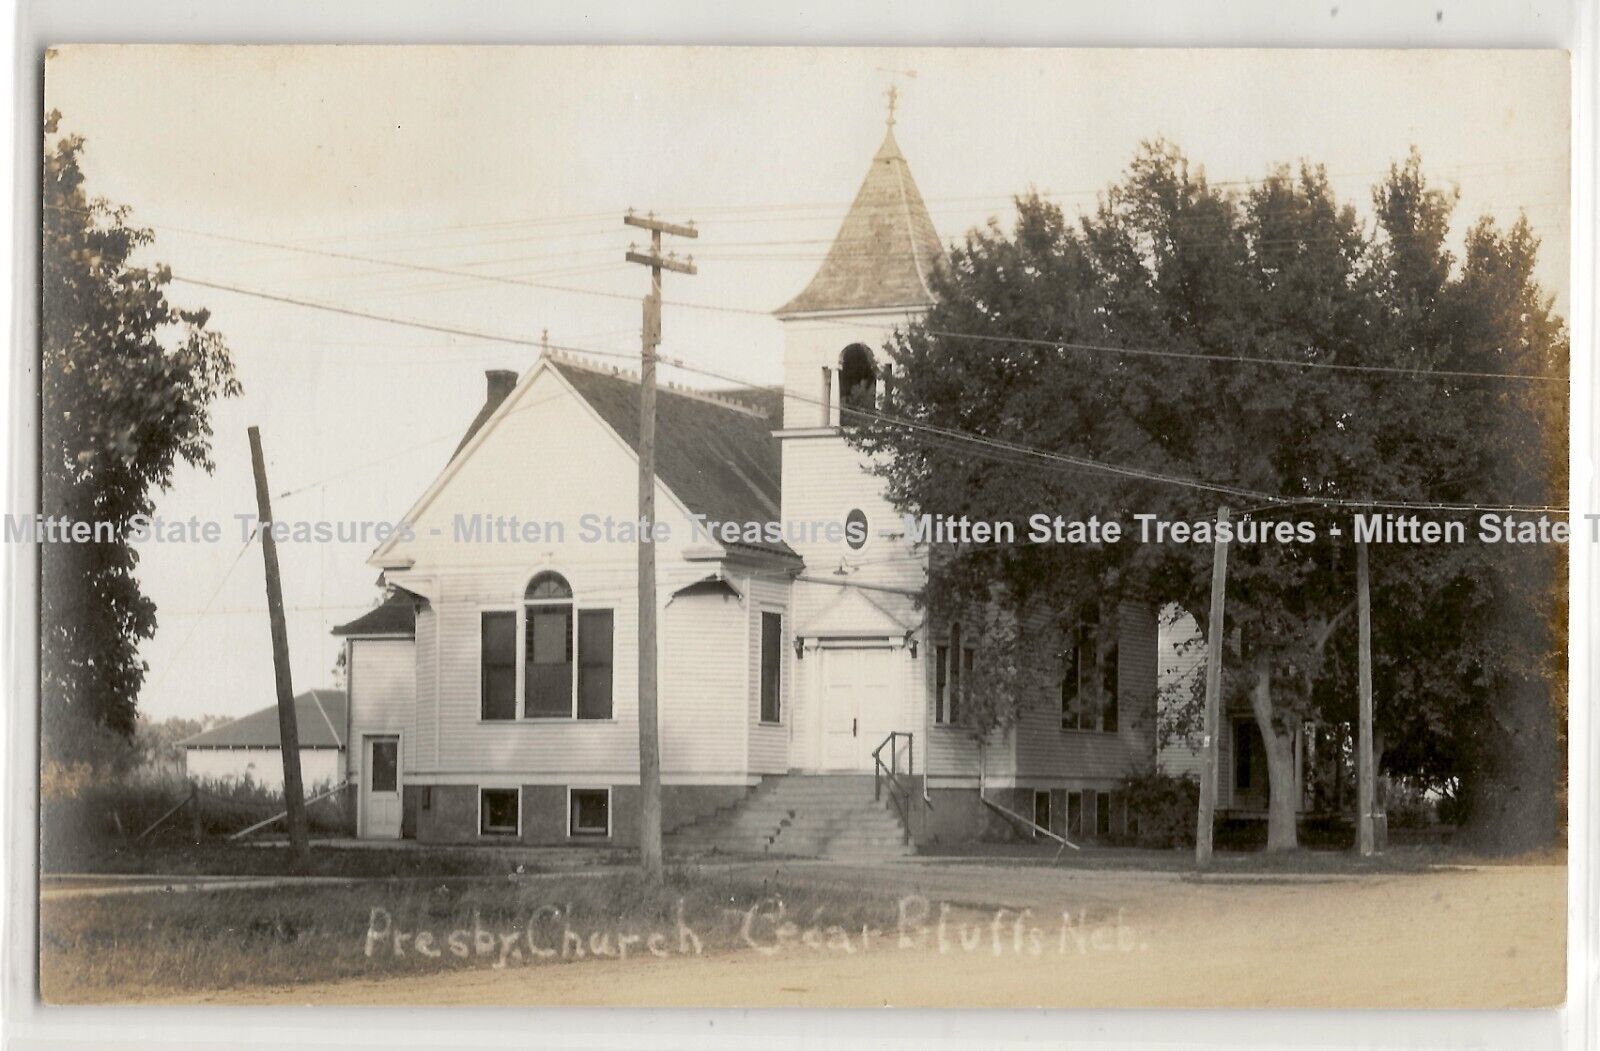 Presbyterian Church, Cedar Bluffs, Nebraska, history photo postcard RPPC %